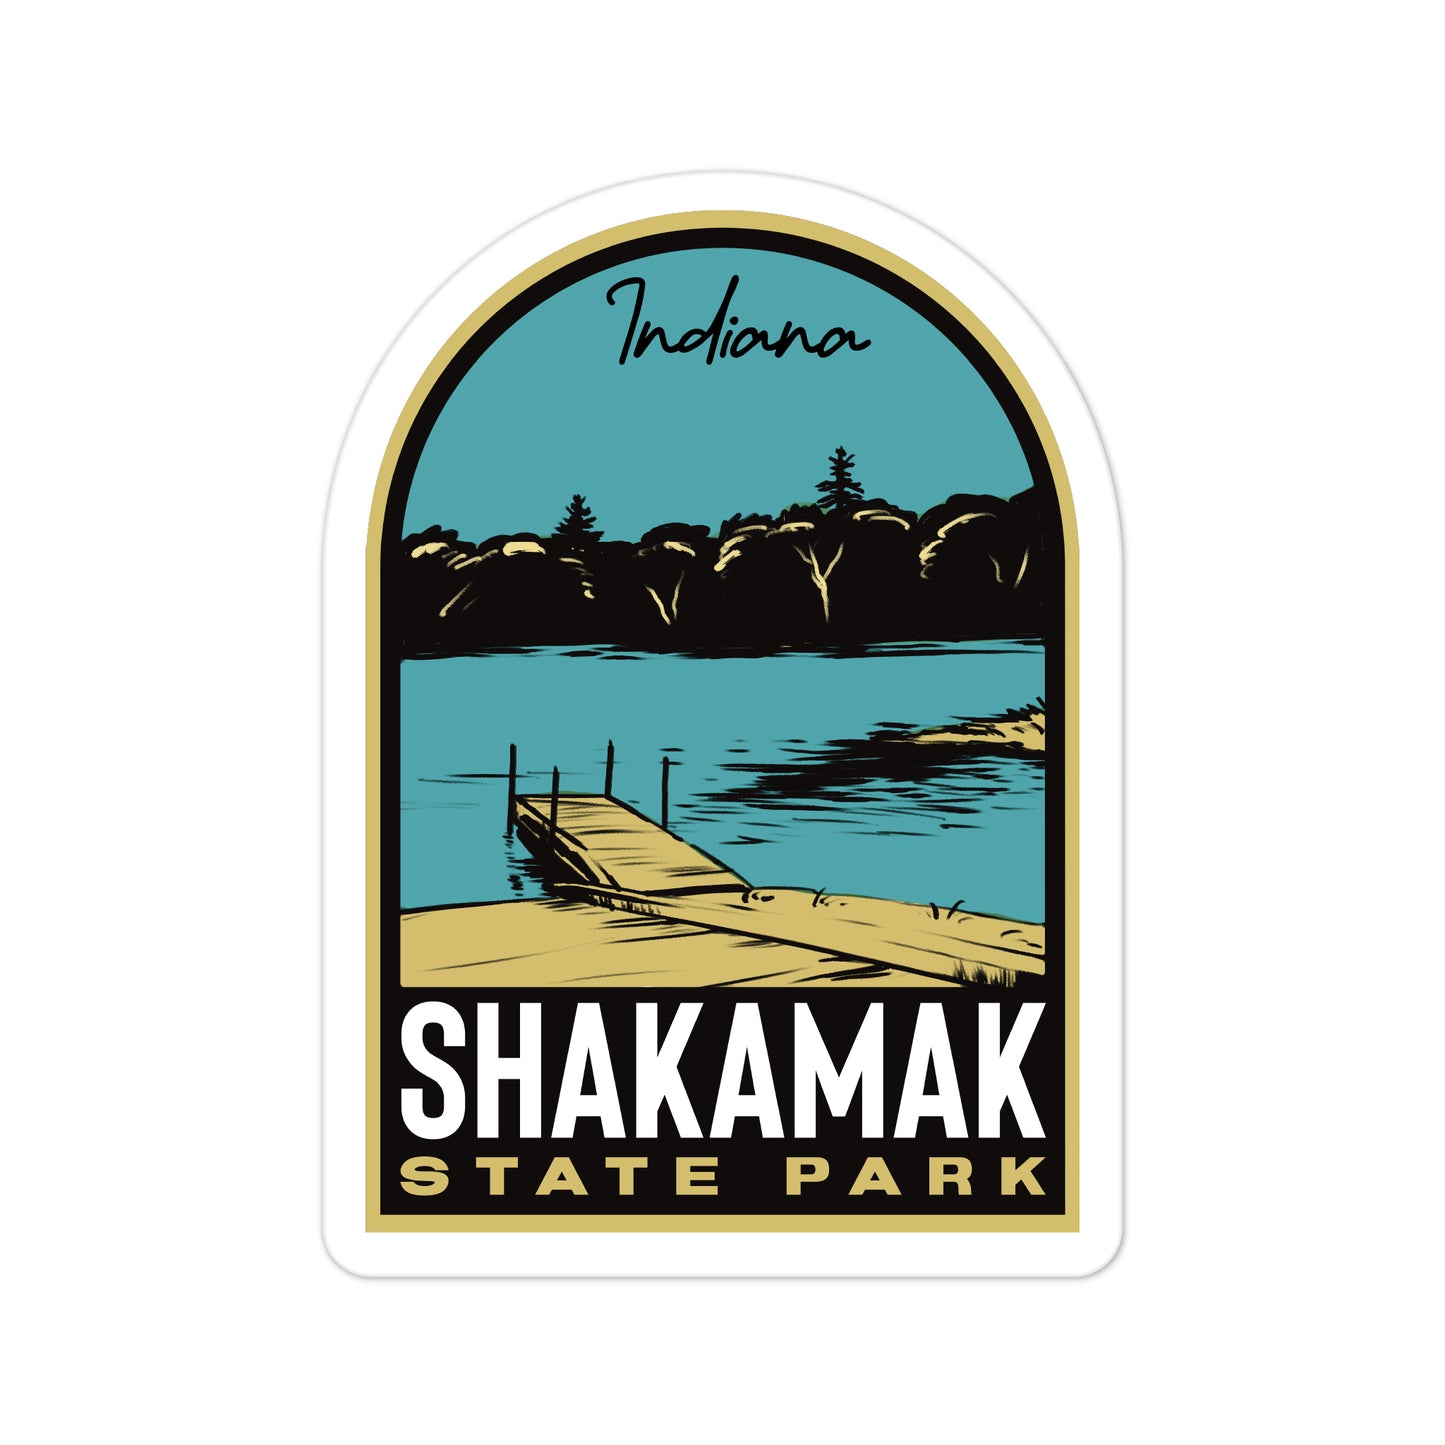 A sticker of Shakamak State Park